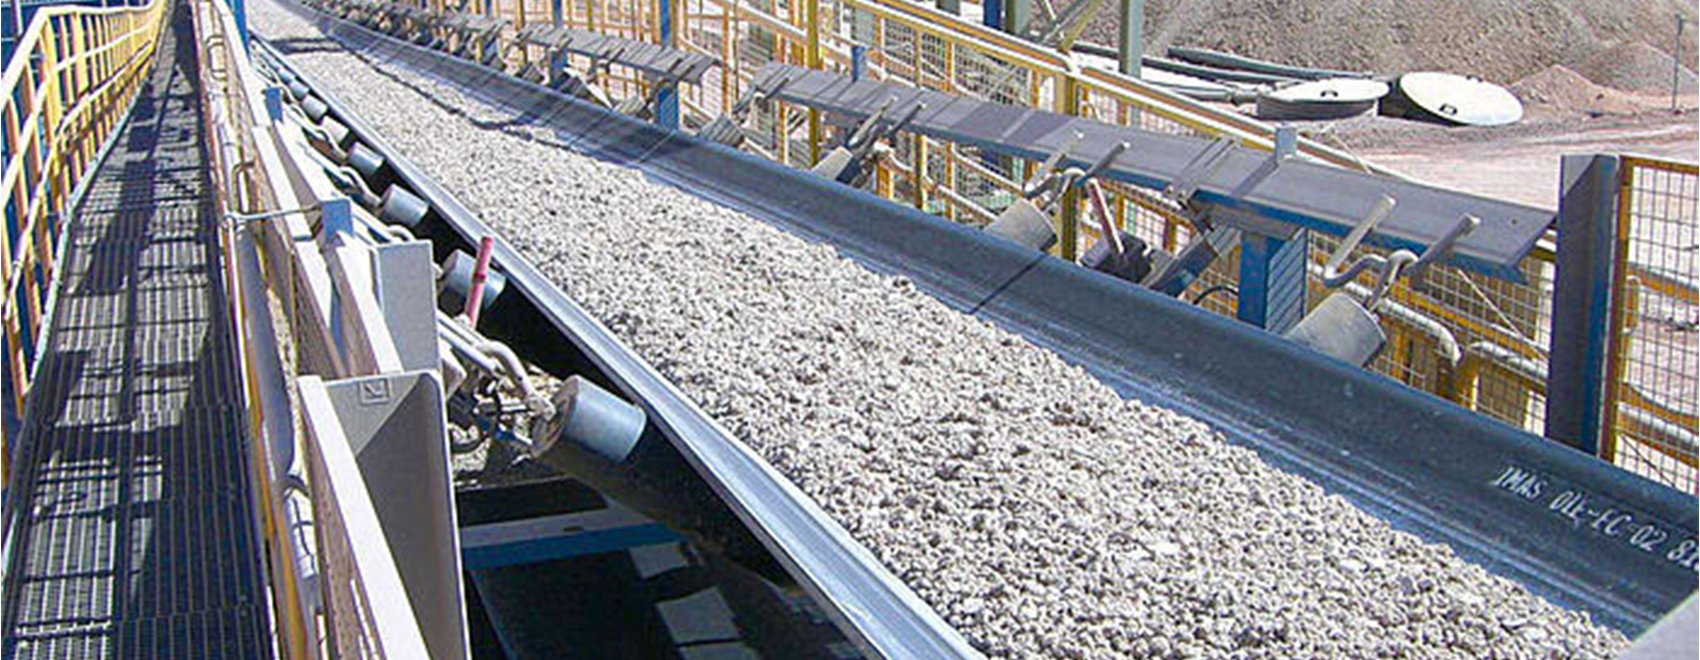 stone crusher conveyor belt